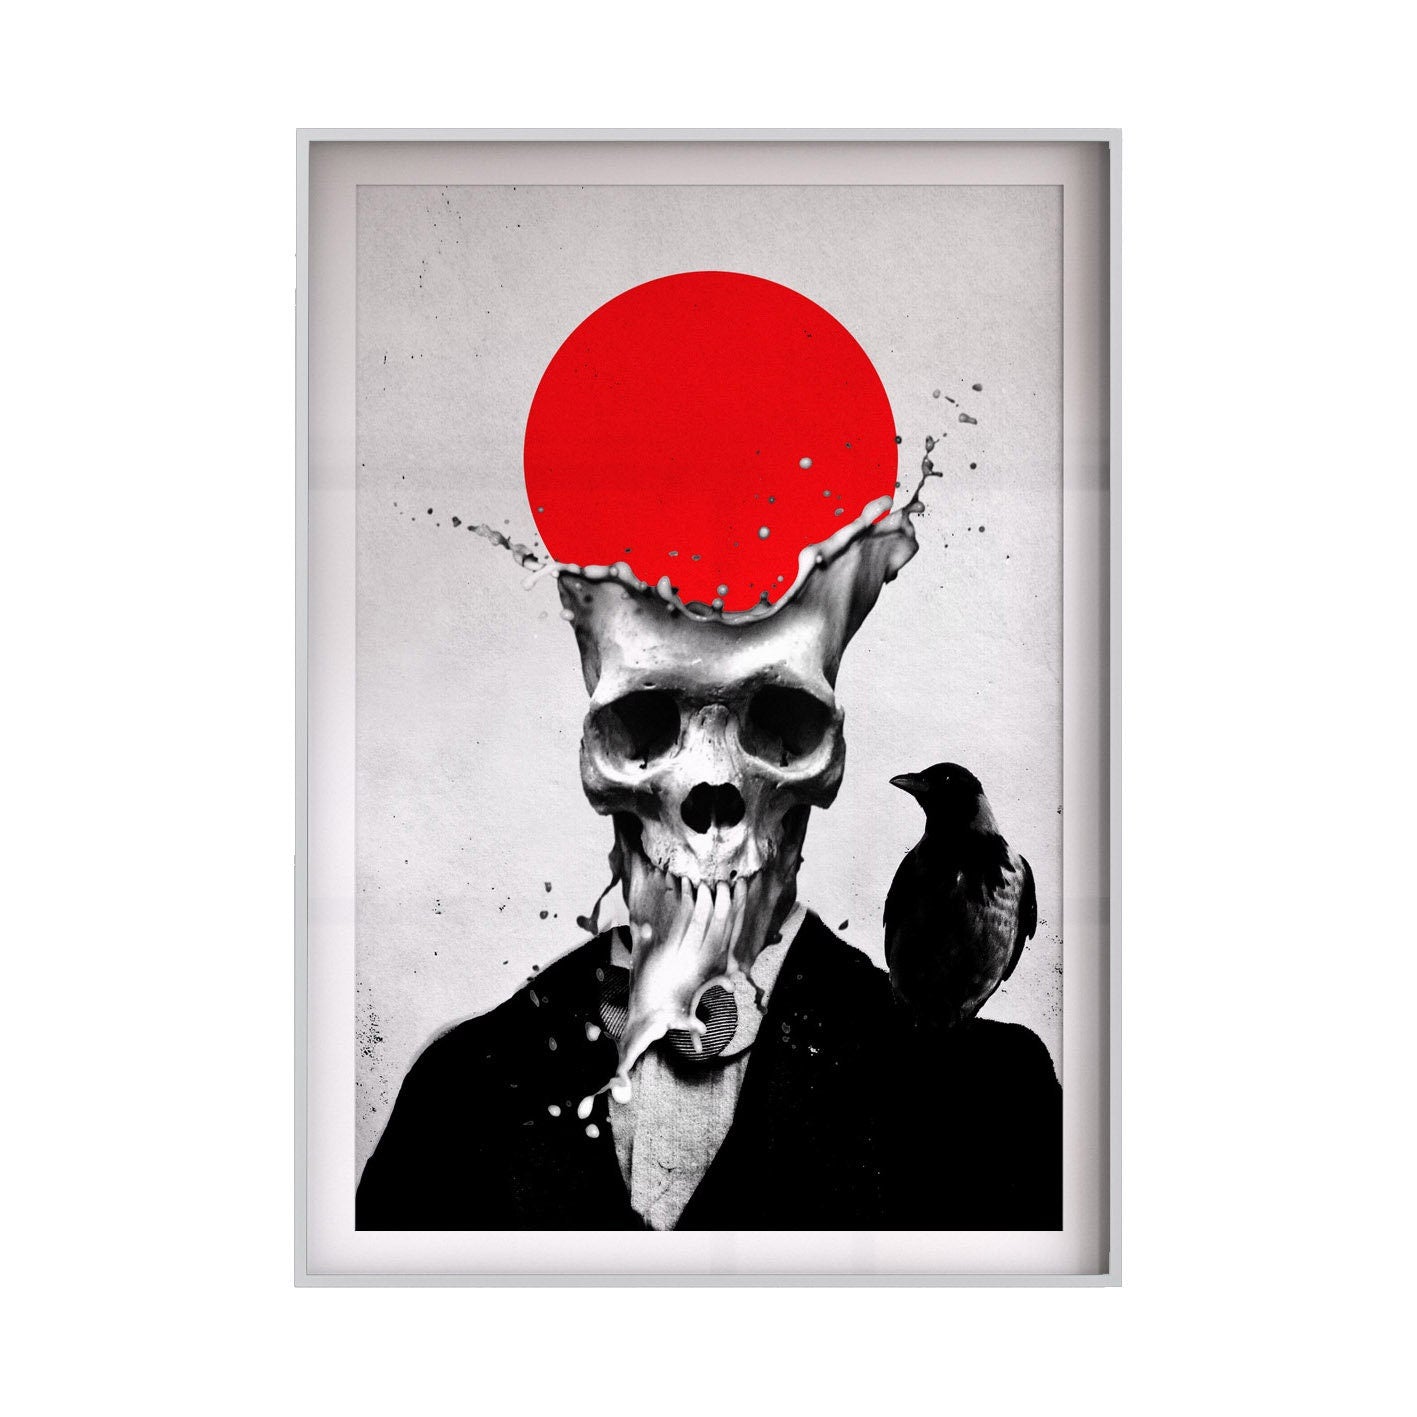 Splash Skull Poster, Sugar Skull Print Wall Art, Gothic Skull Home Decor, Skull Art Print Gift, Abstract Skull Art Illustration By Ali Gulec